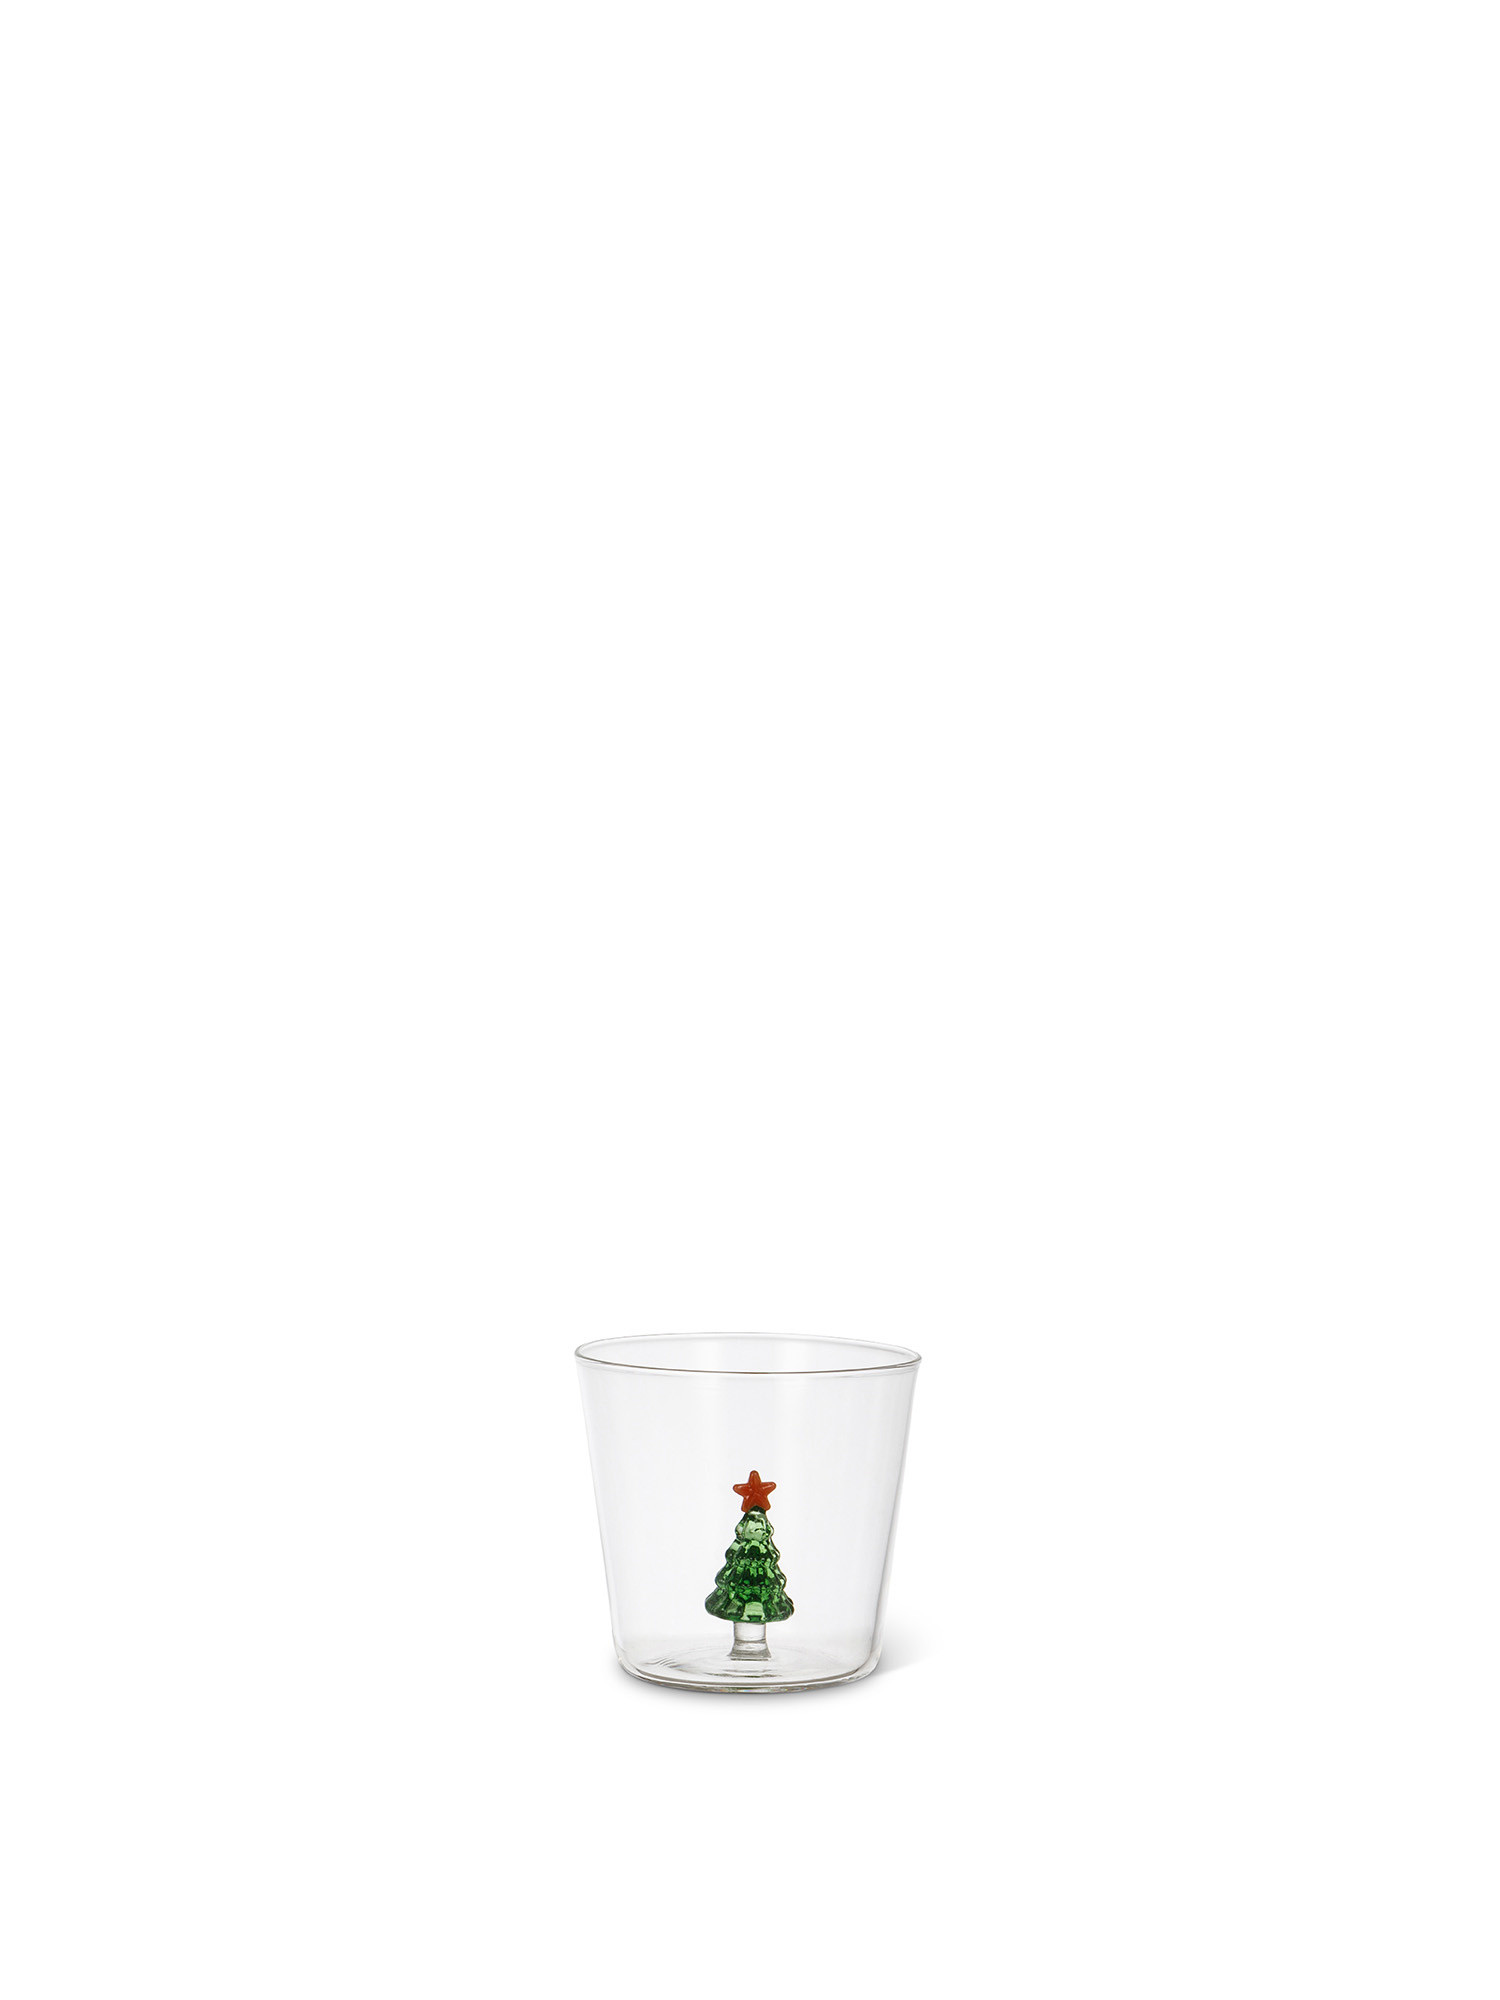 Bicchiere in vetro dettaglio albero Natale, Trasparente, large image number 0